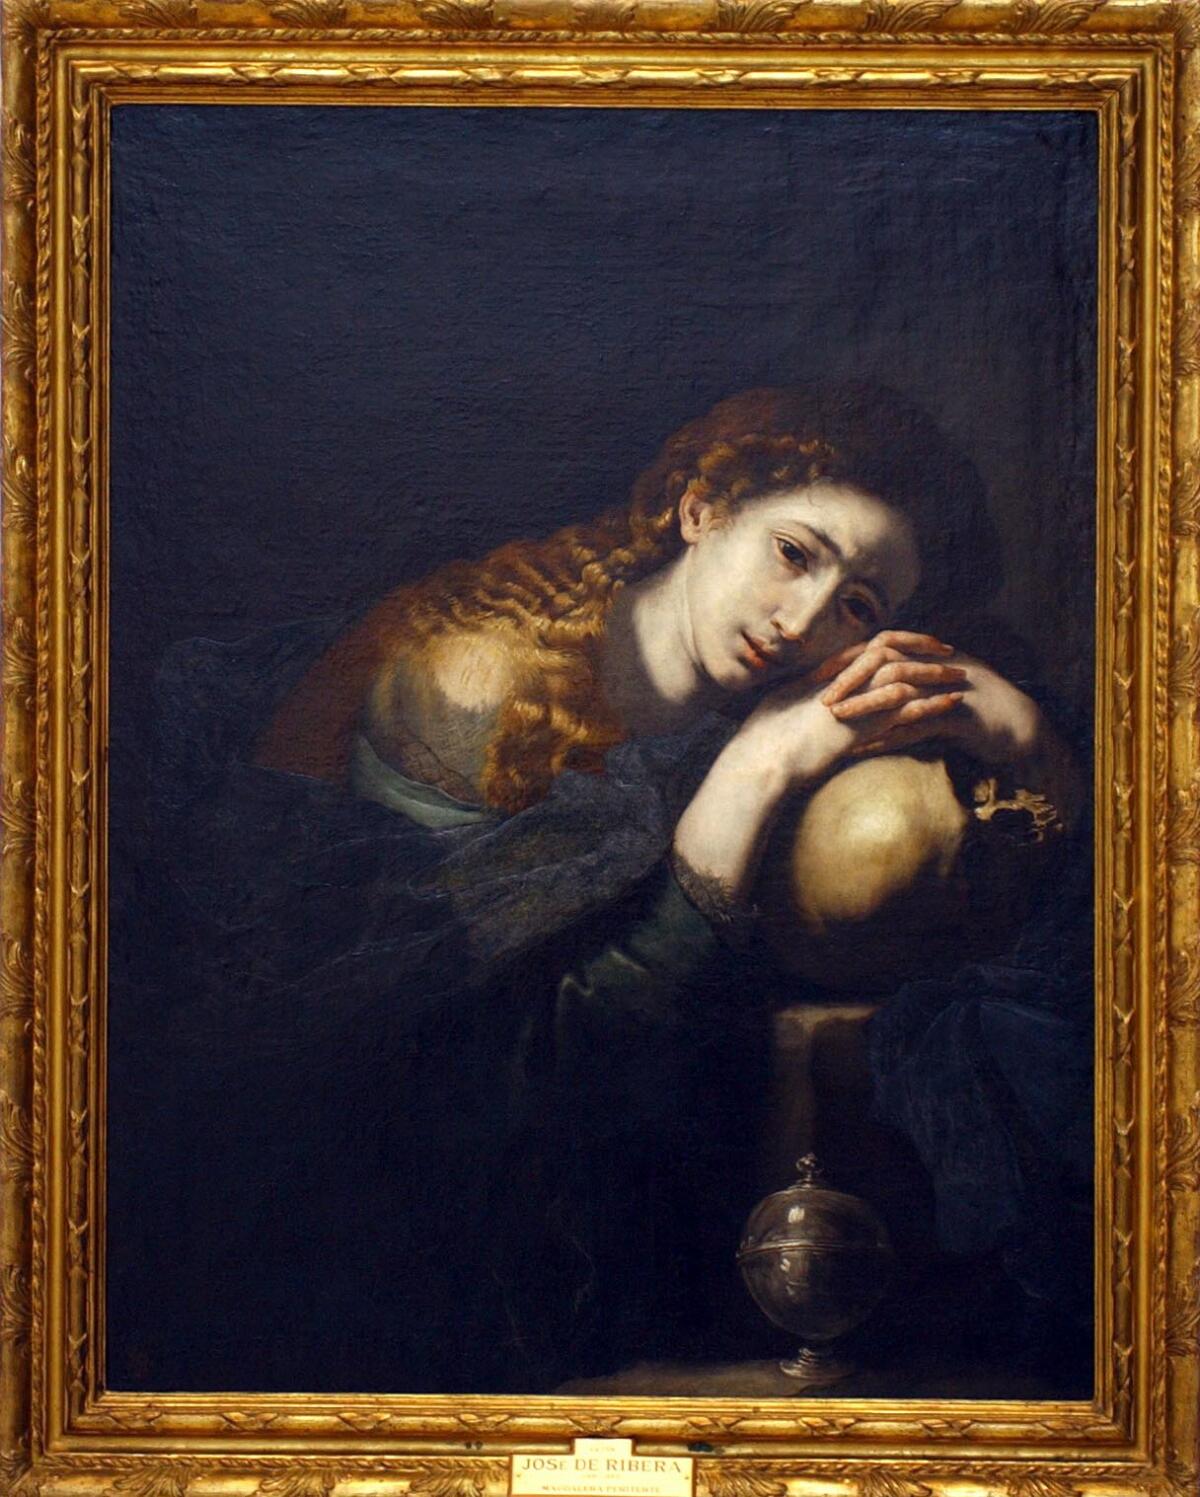 Magdalena penitente de José de Ribera (1635) uno de los maestros del barroco. 